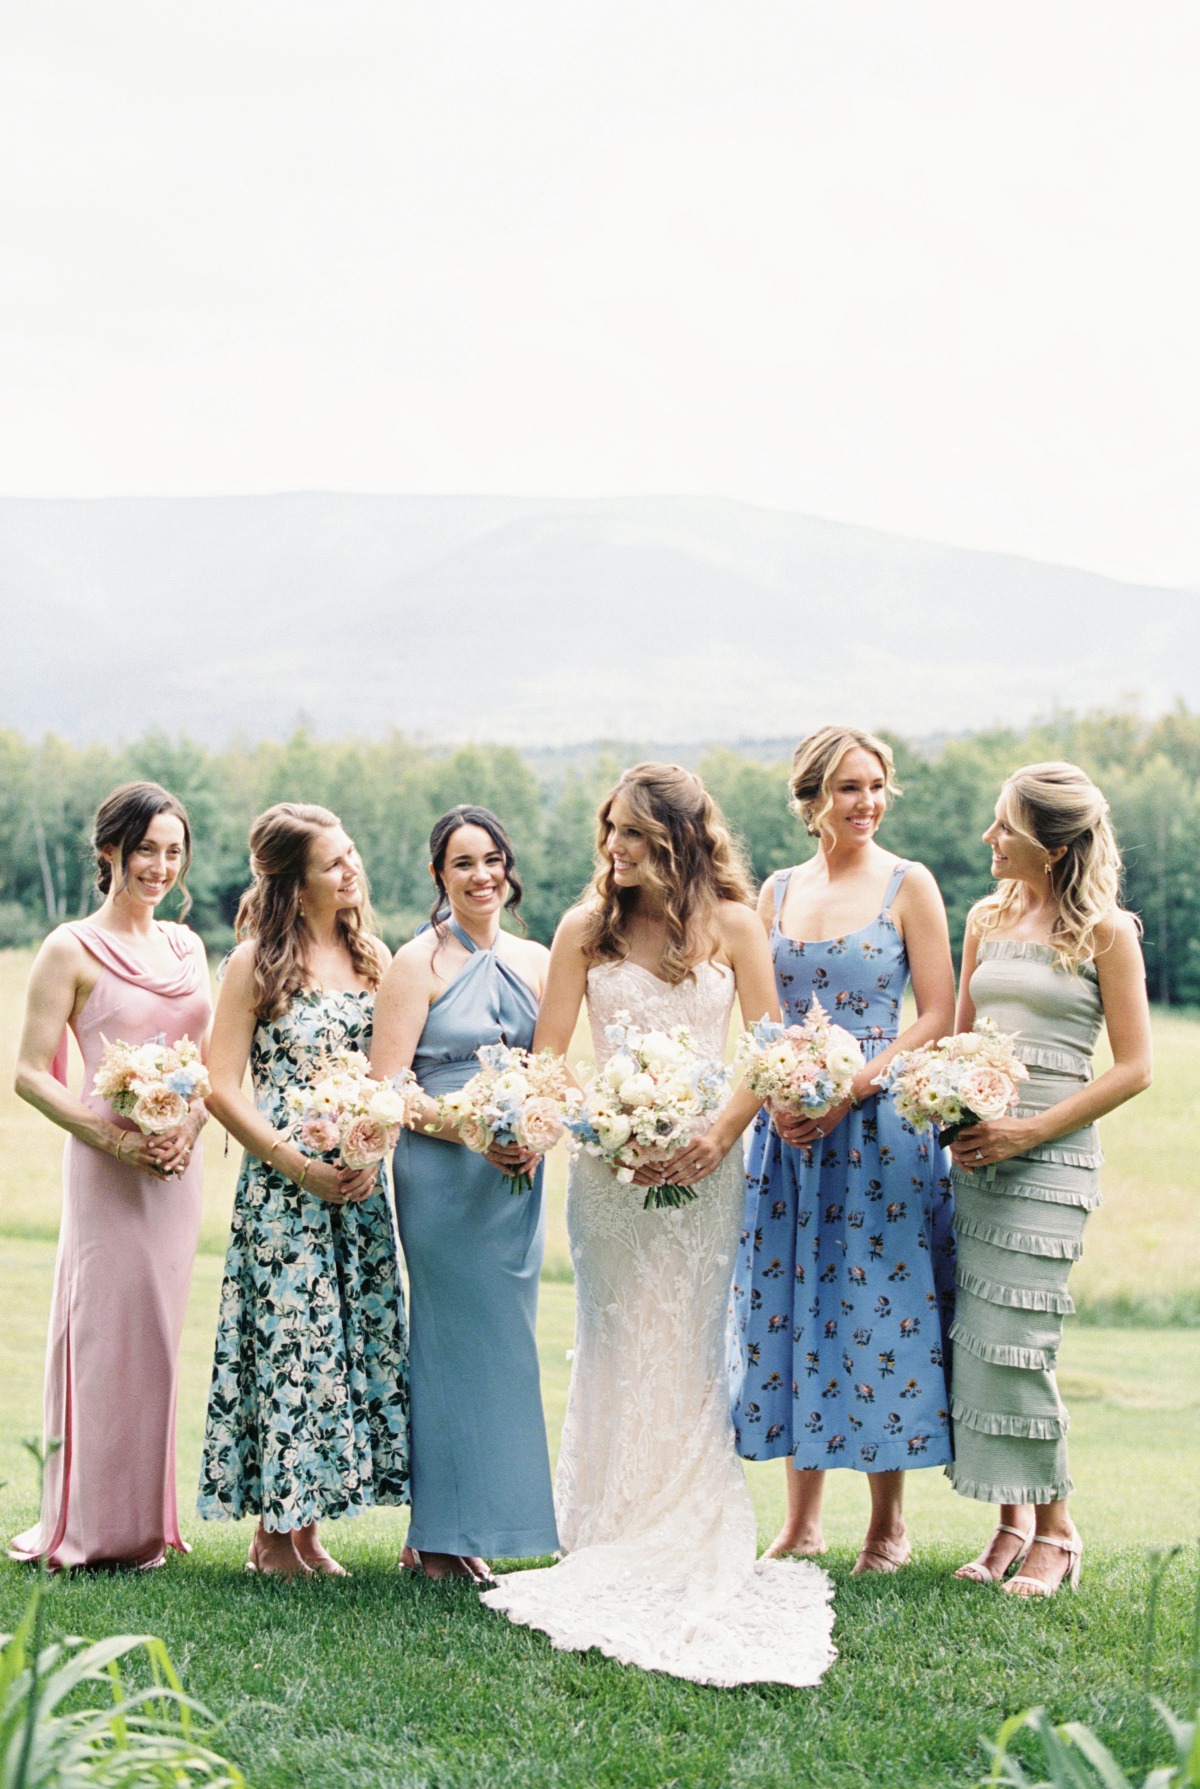 Mismatched pastel floral bridesmaids dresses and bouquets